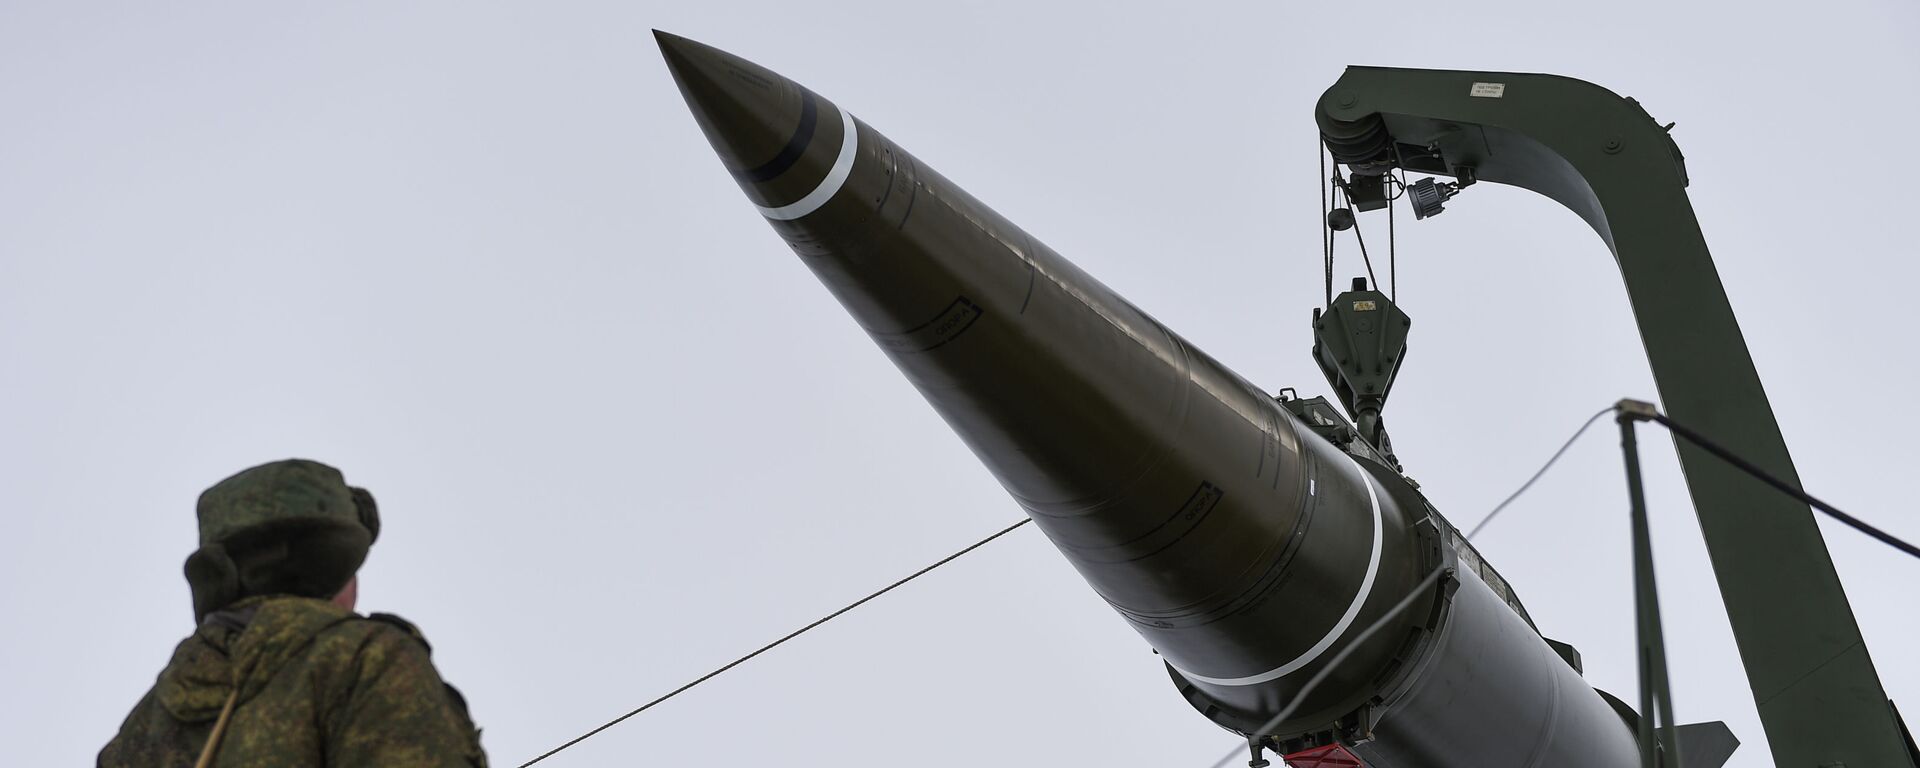 Пуск баллистической ракеты ОТРК Искандер-М с полигона Капустин Яр - Sputnik Грузия, 1920, 30.12.2021